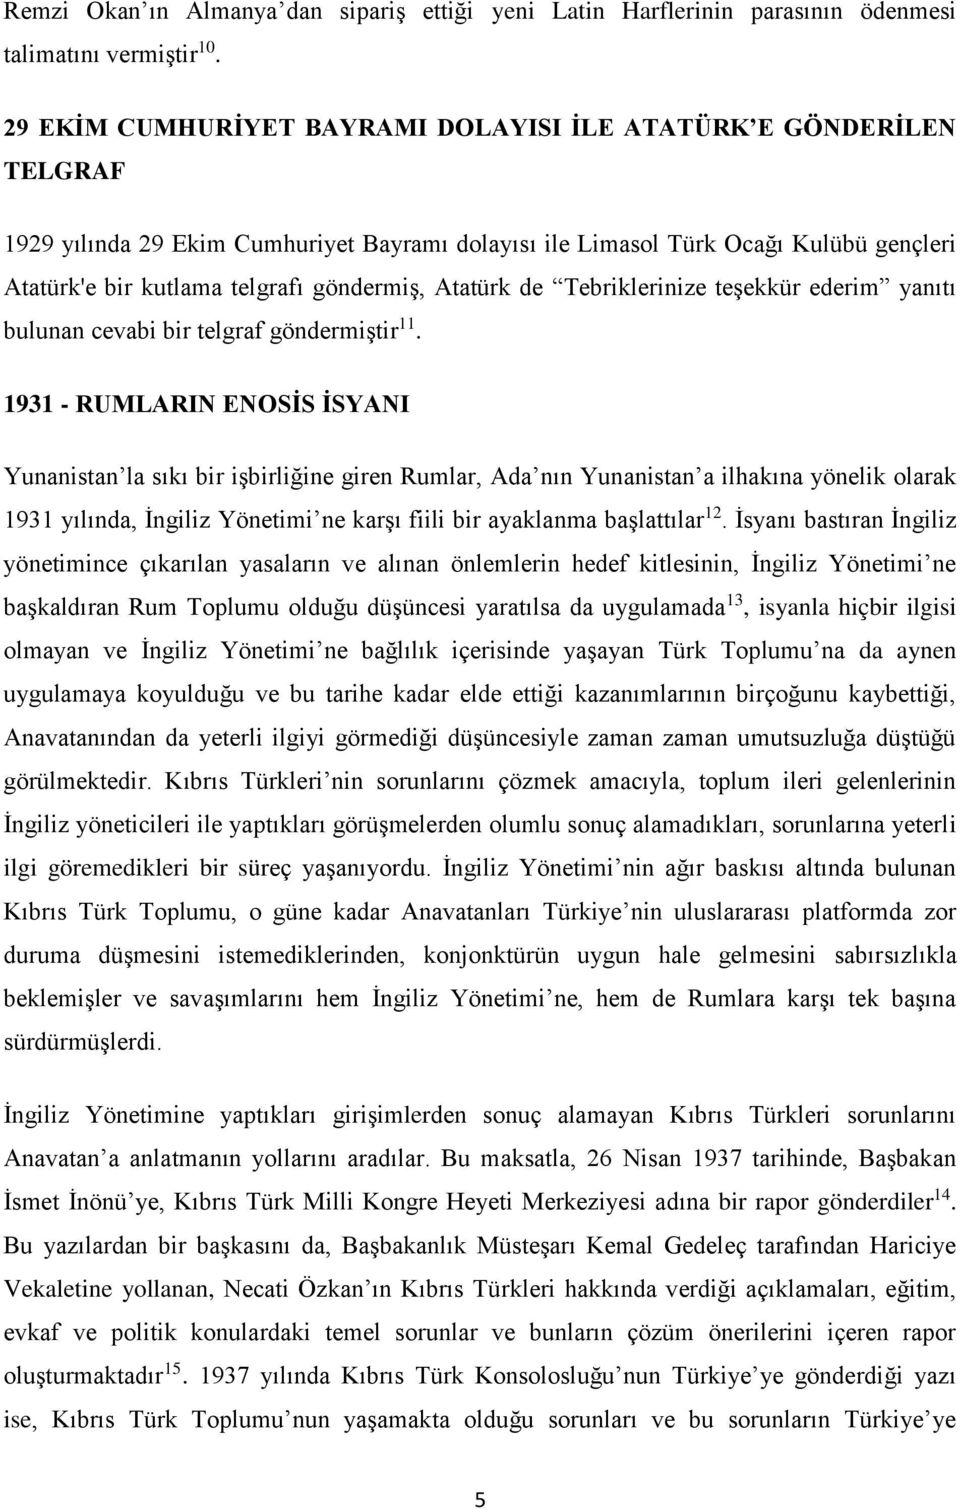 Atatürk de Tebriklerinize teşekkür ederim yanıtı bulunan cevabi bir telgraf göndermiştir 11.